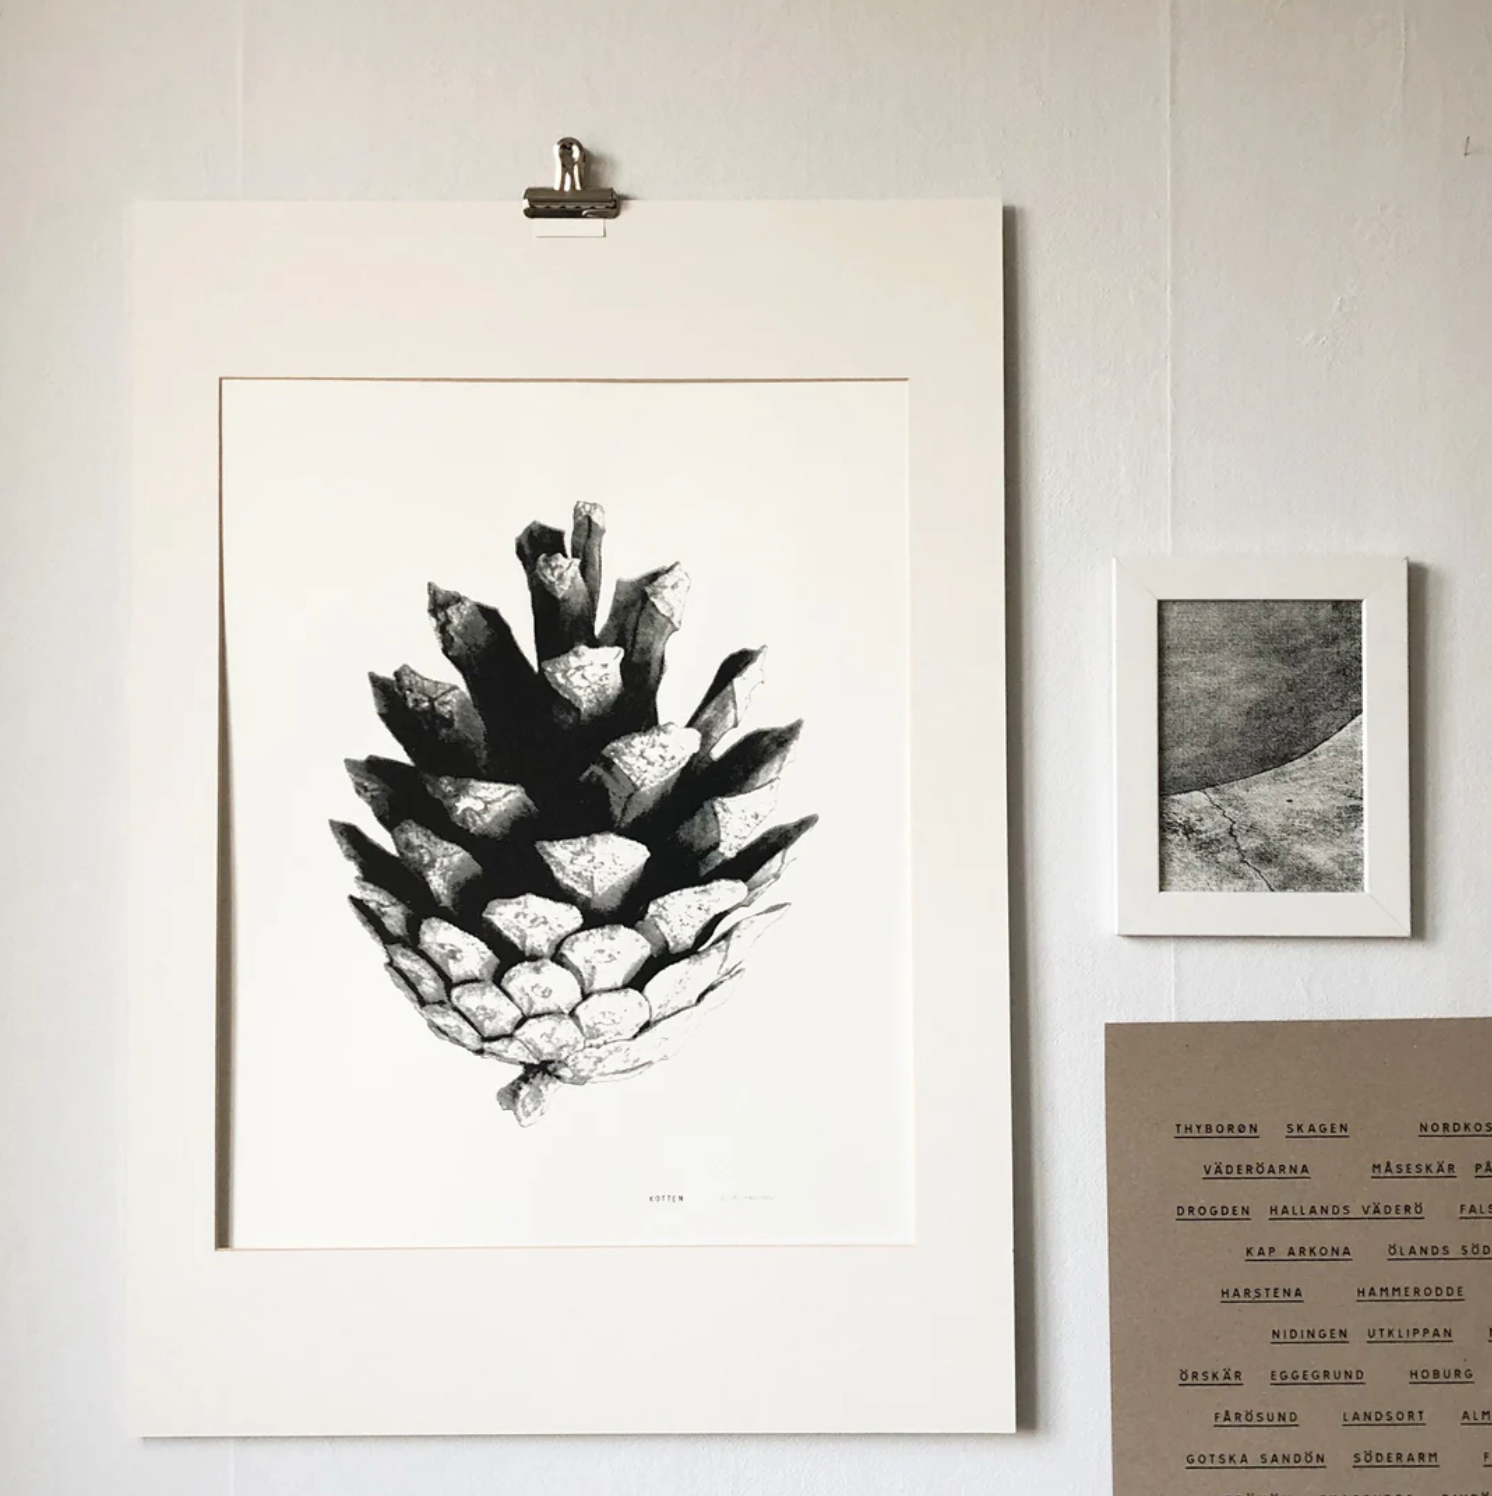 Screenprint Kotten (pinecone) 46 x 64 cm